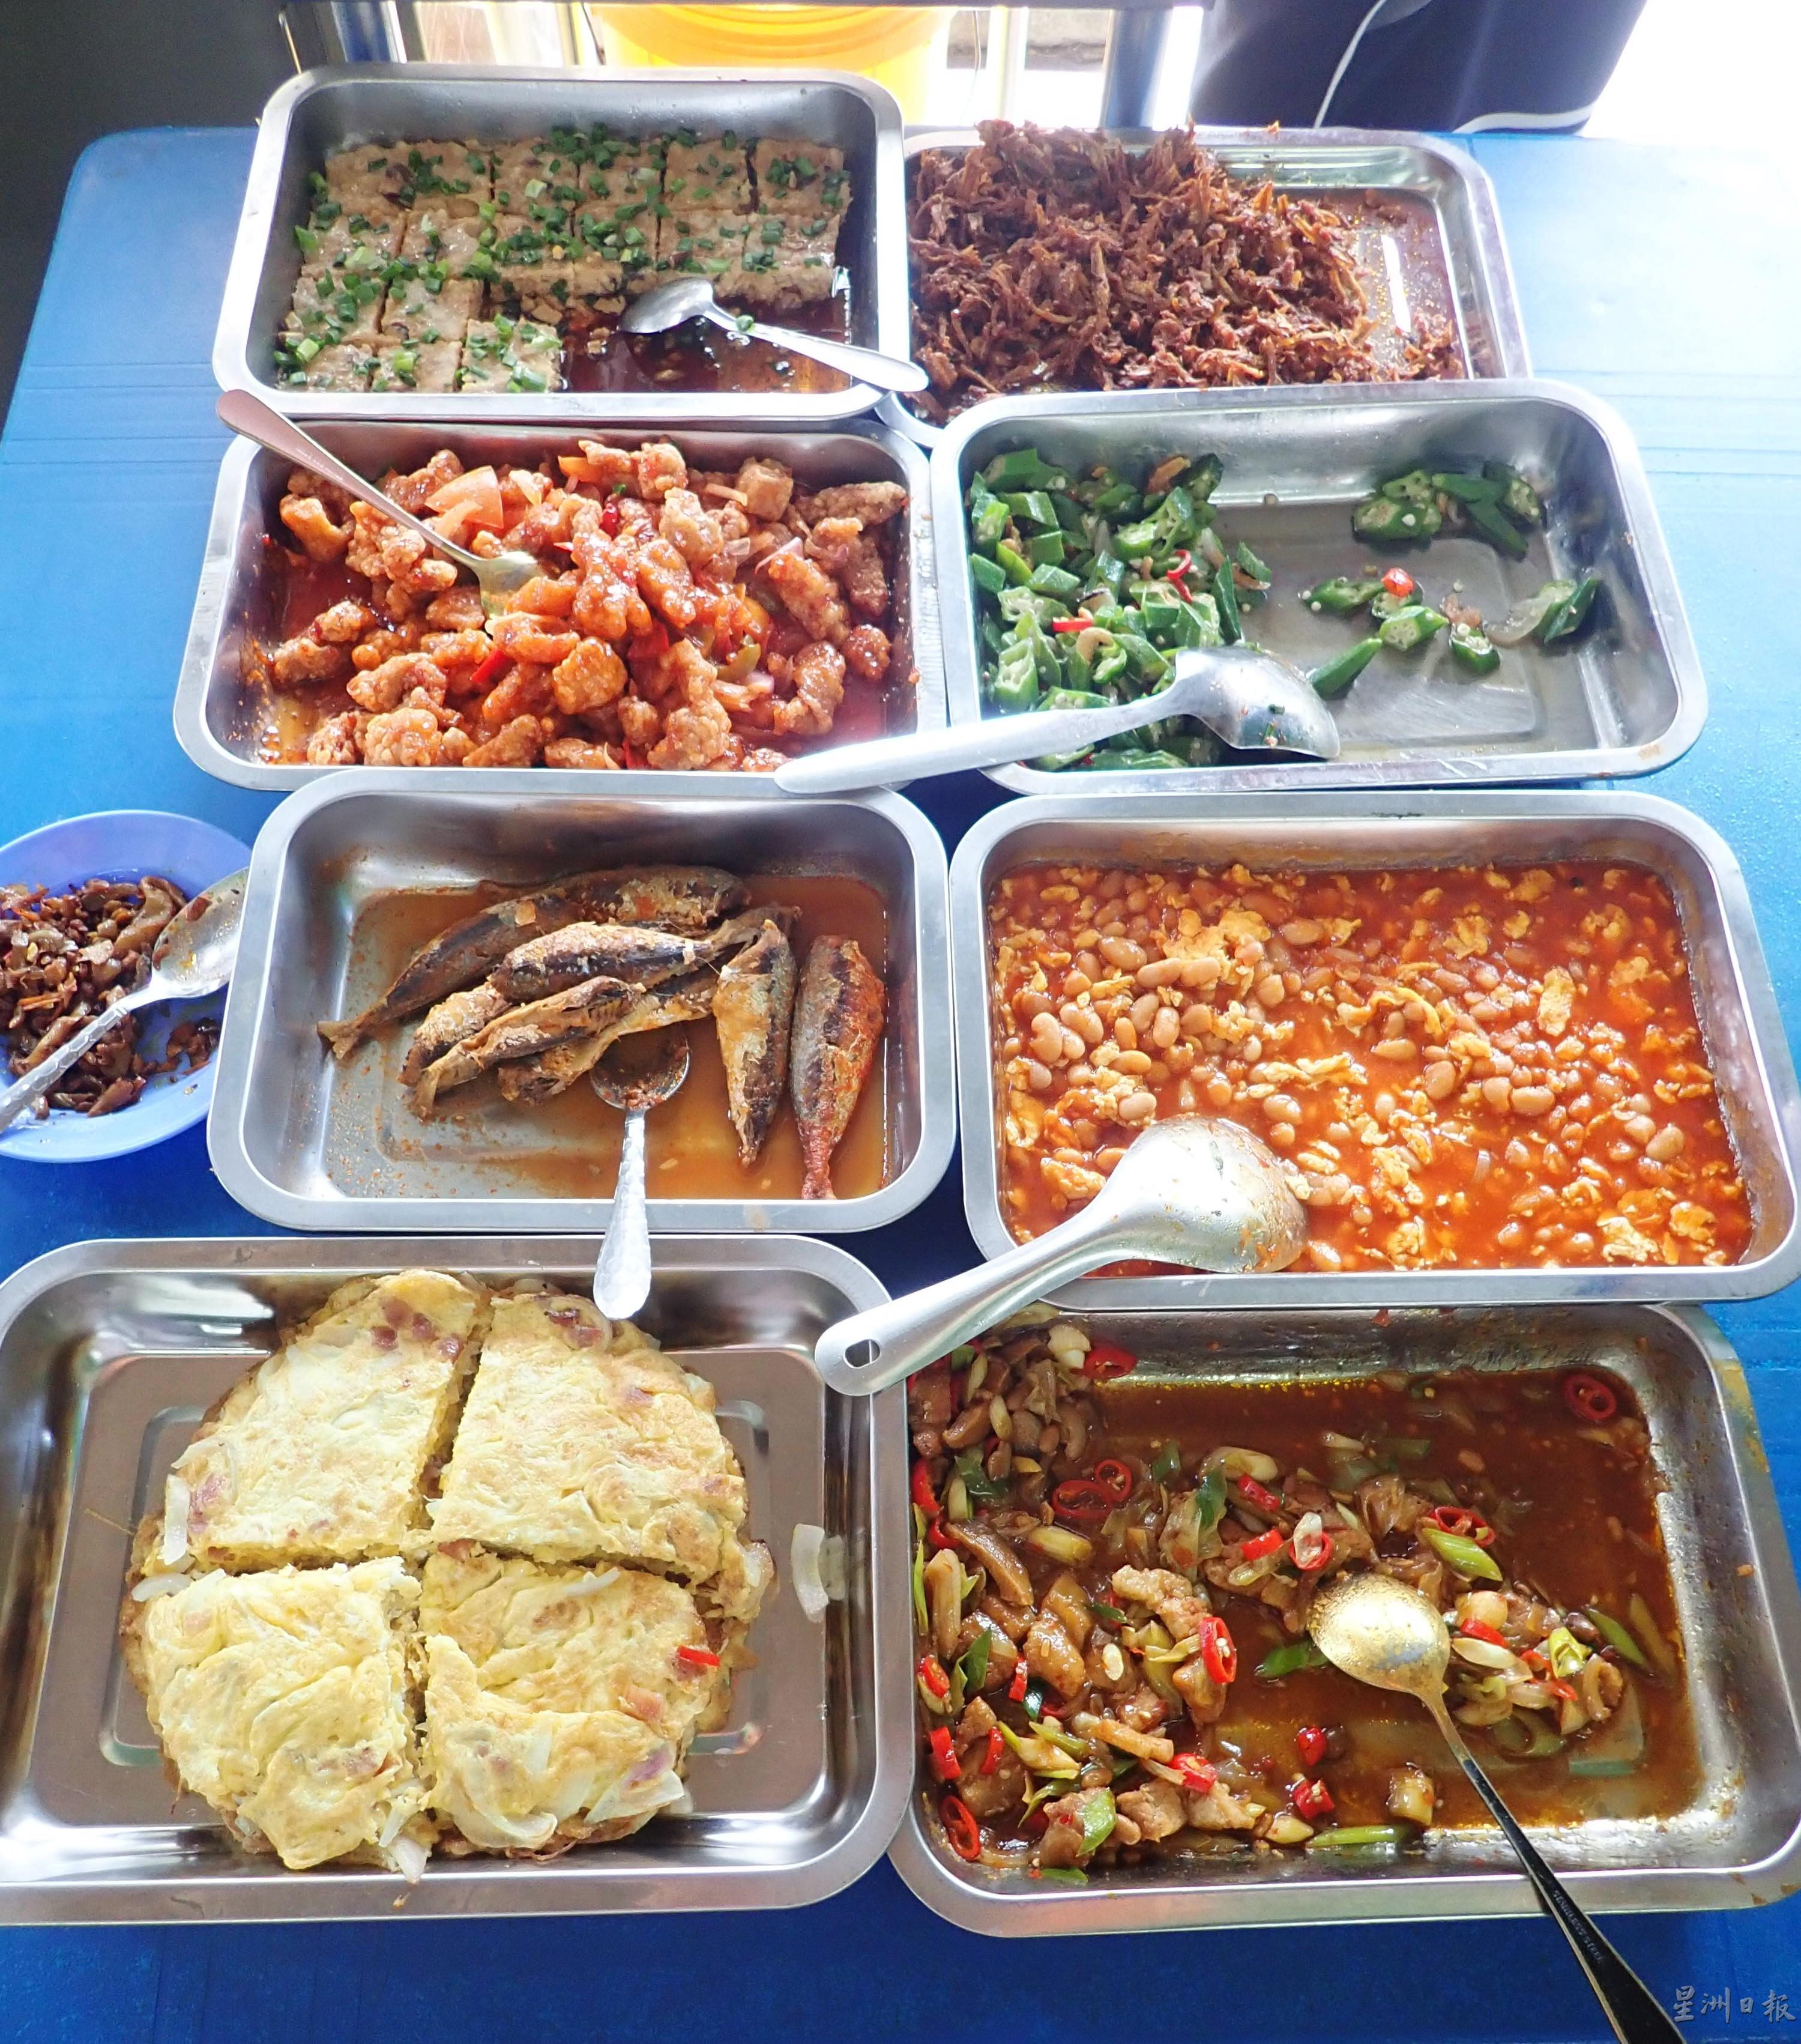 椰浆饭部分的菜式，有炸鱼、炸虾蛄、黄豆、羊角豆及蛋等。

